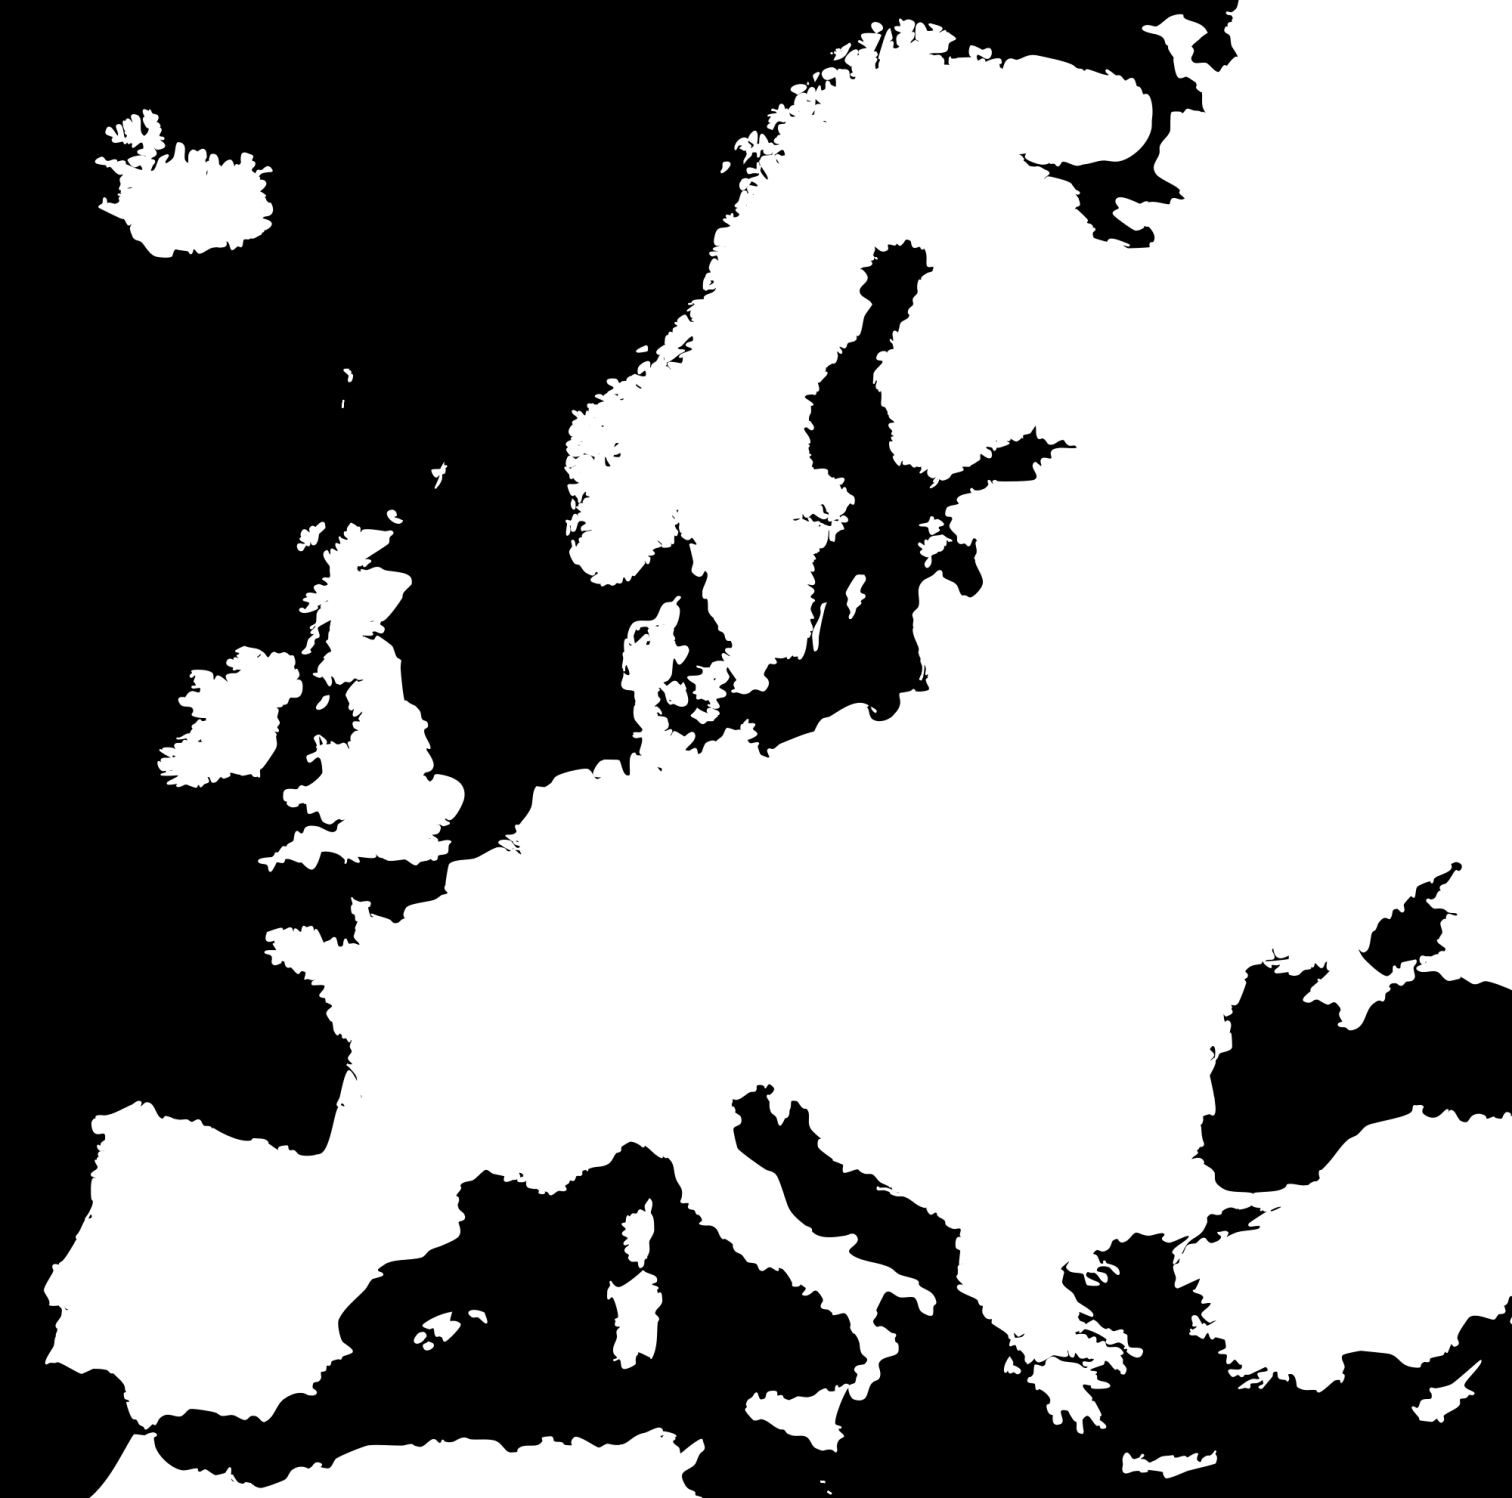 En 28 Estados Miembros de la UE 1,500 entrevistas por